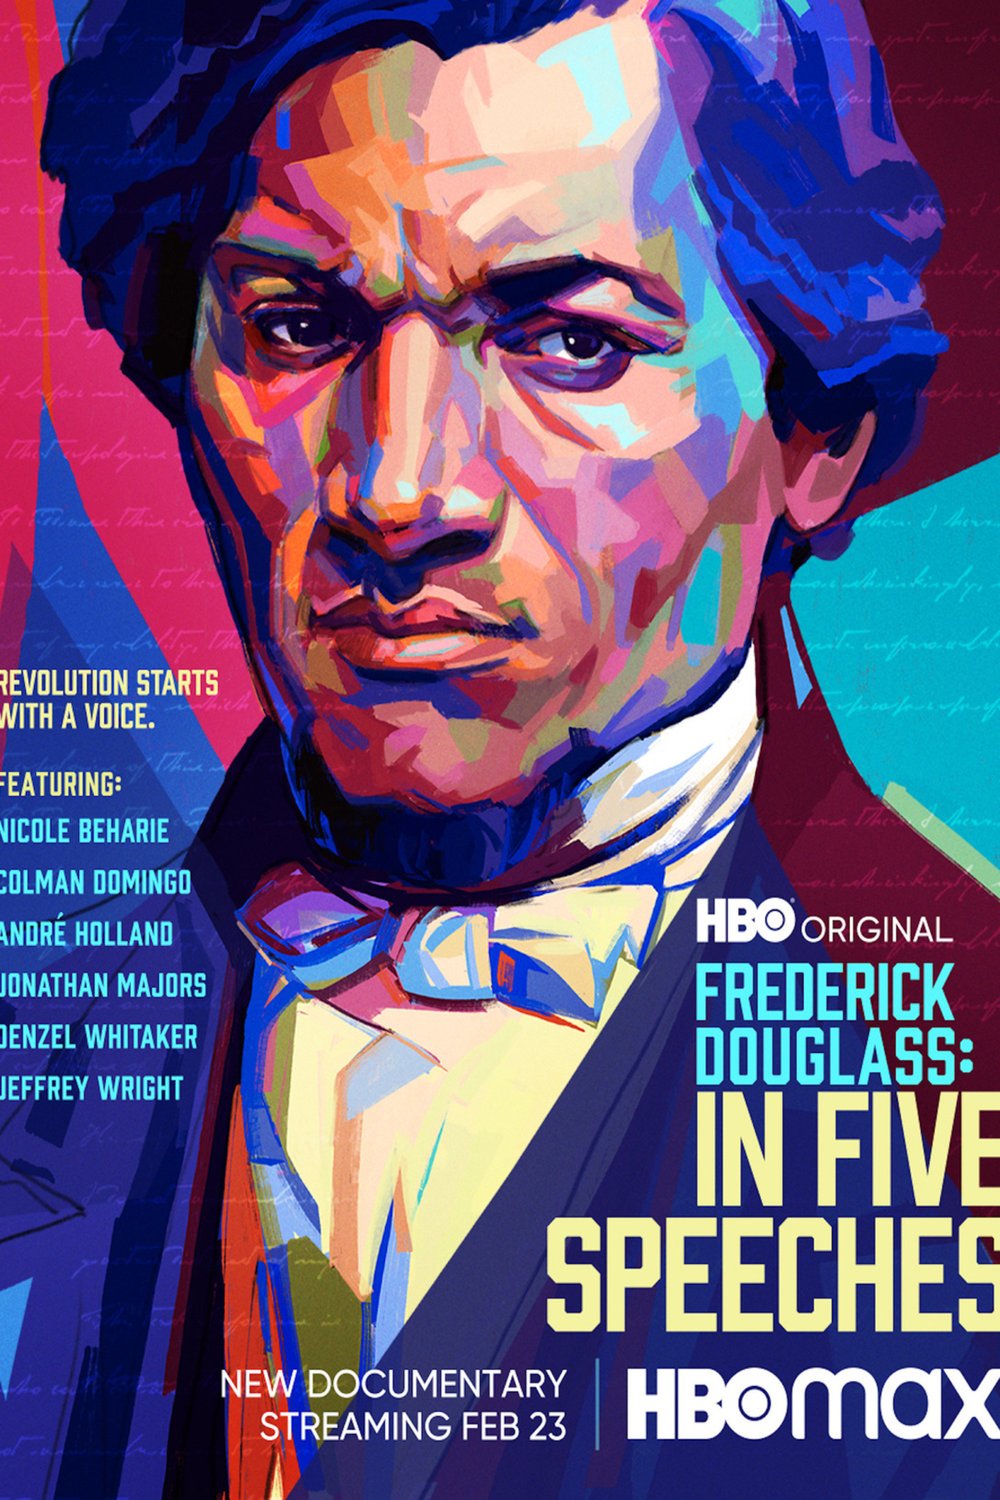 L'affiche du film Frederick Douglass: In Five Speeches